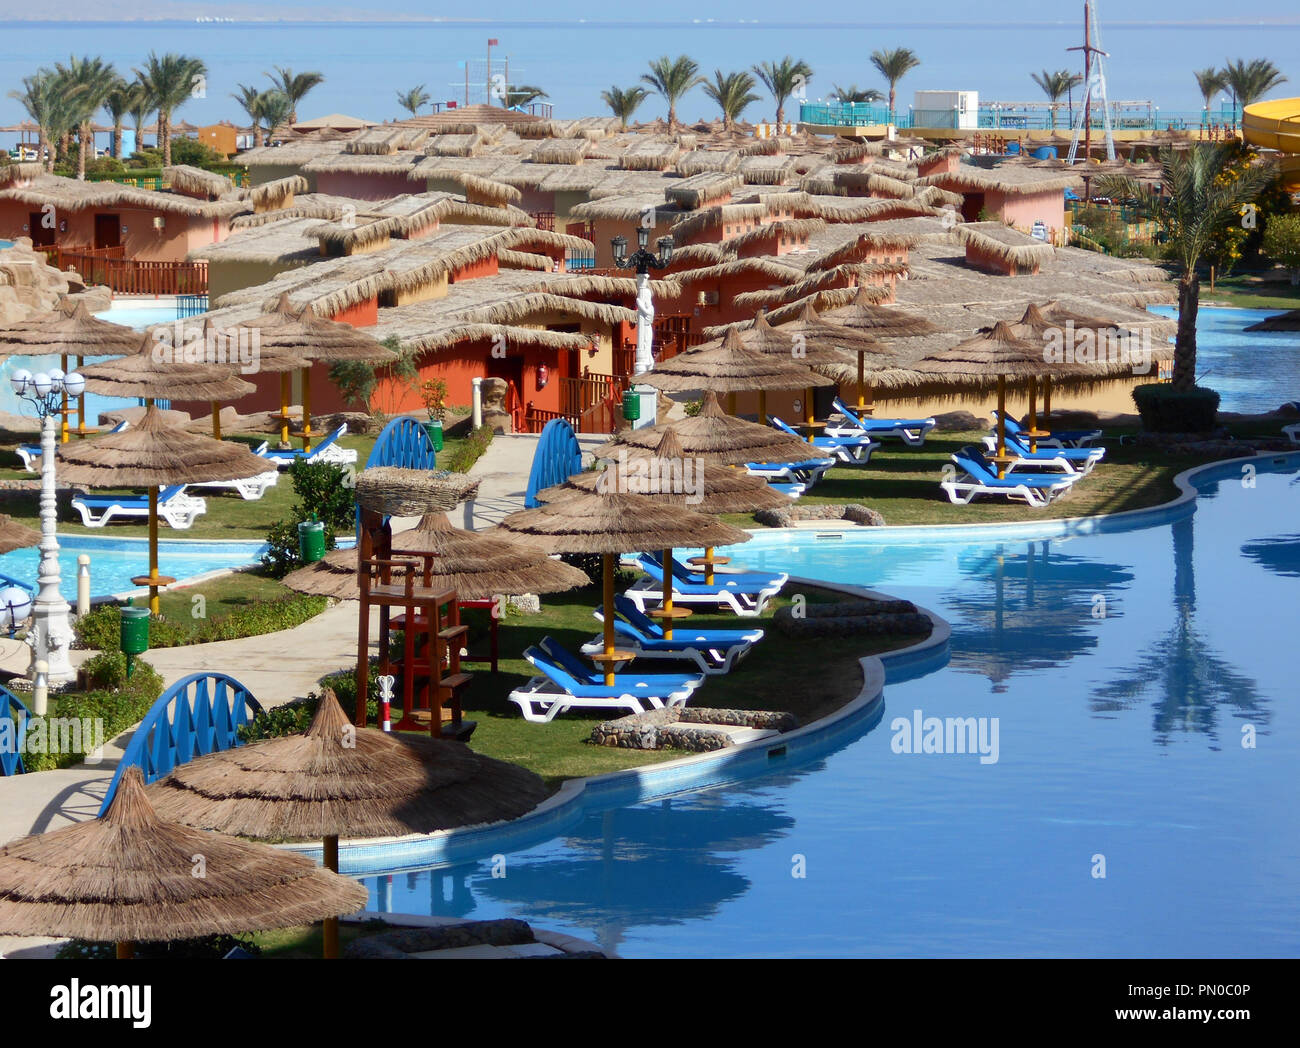 Le ampie e di enormi piscine e strutture, in uno dei tanti alberghi al mare rosso holiday resort, Hurghada, in Egitto. Foto Stock